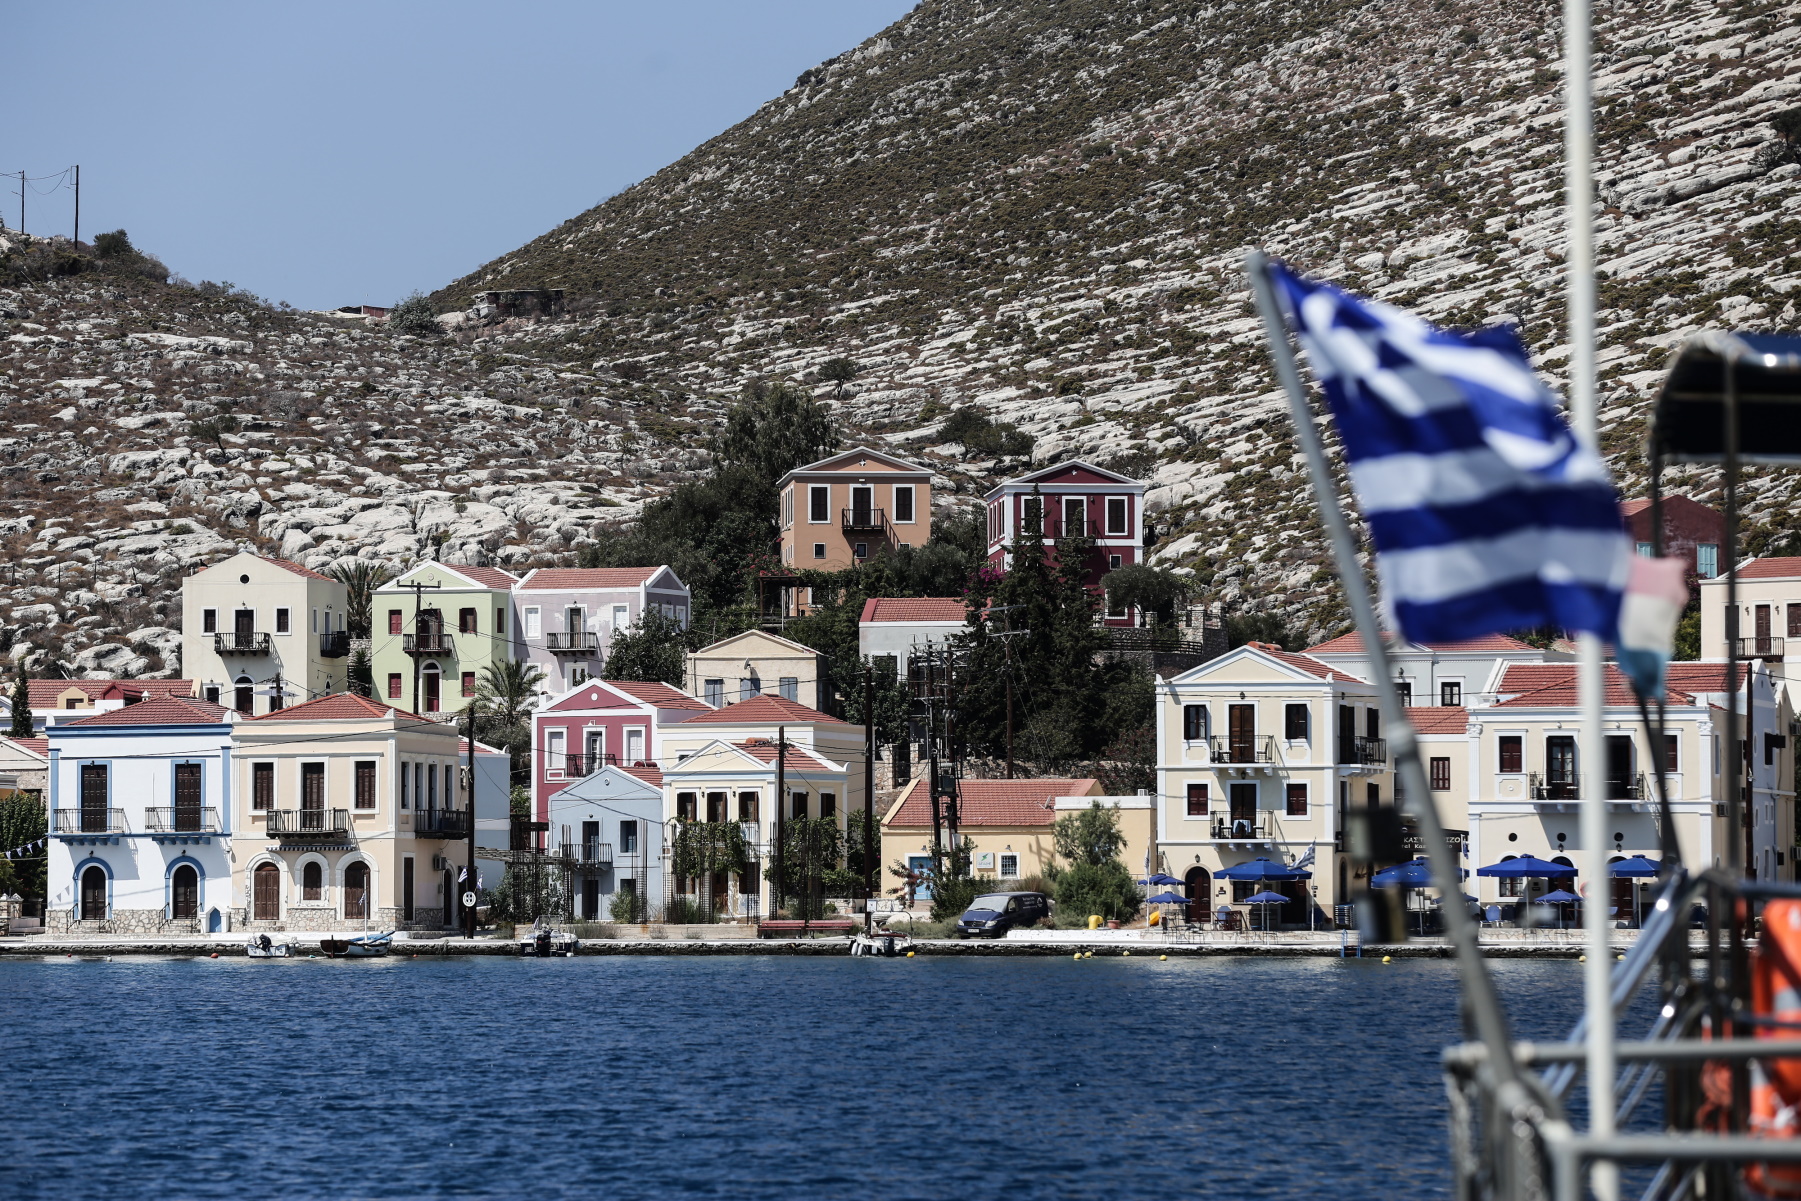 Συνεχίζεται η Τουρκική πρόκληση – «Προβοκάτσιες οι επισκέψεις Ελλήνων αξιωματούχων στο Καστελόριζο»